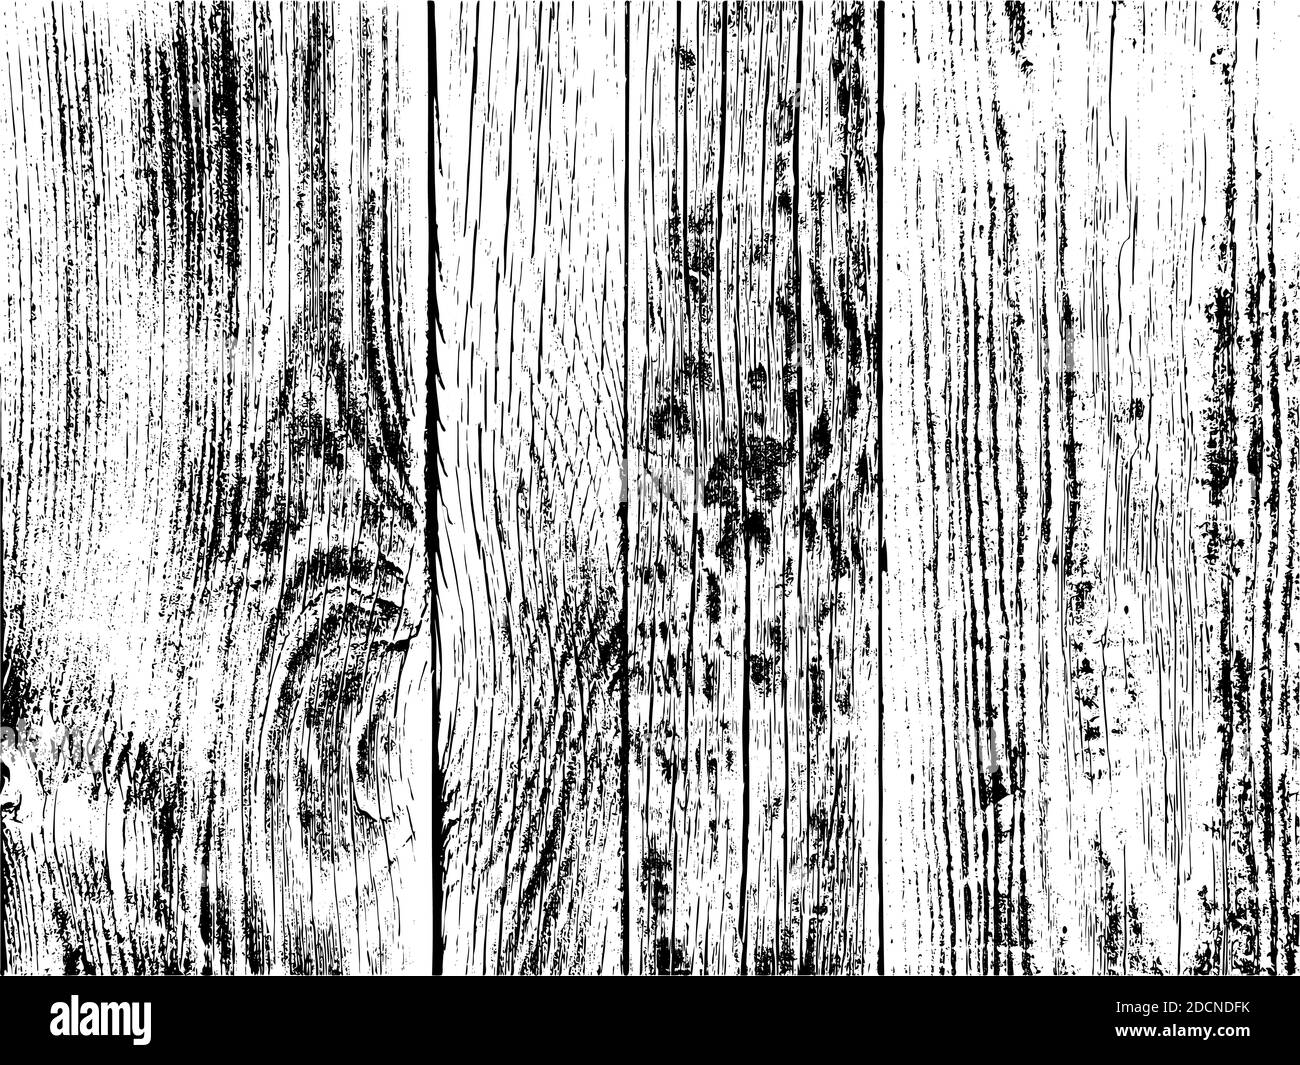 Holzstruktur. Natürliche Holzplatte texturierten Effekt, gealtertes Holz, schäbig körnige Oberfläche Tischlerei Struktur, grungy Platten Tapete Vektor Hintergrund Stock Vektor